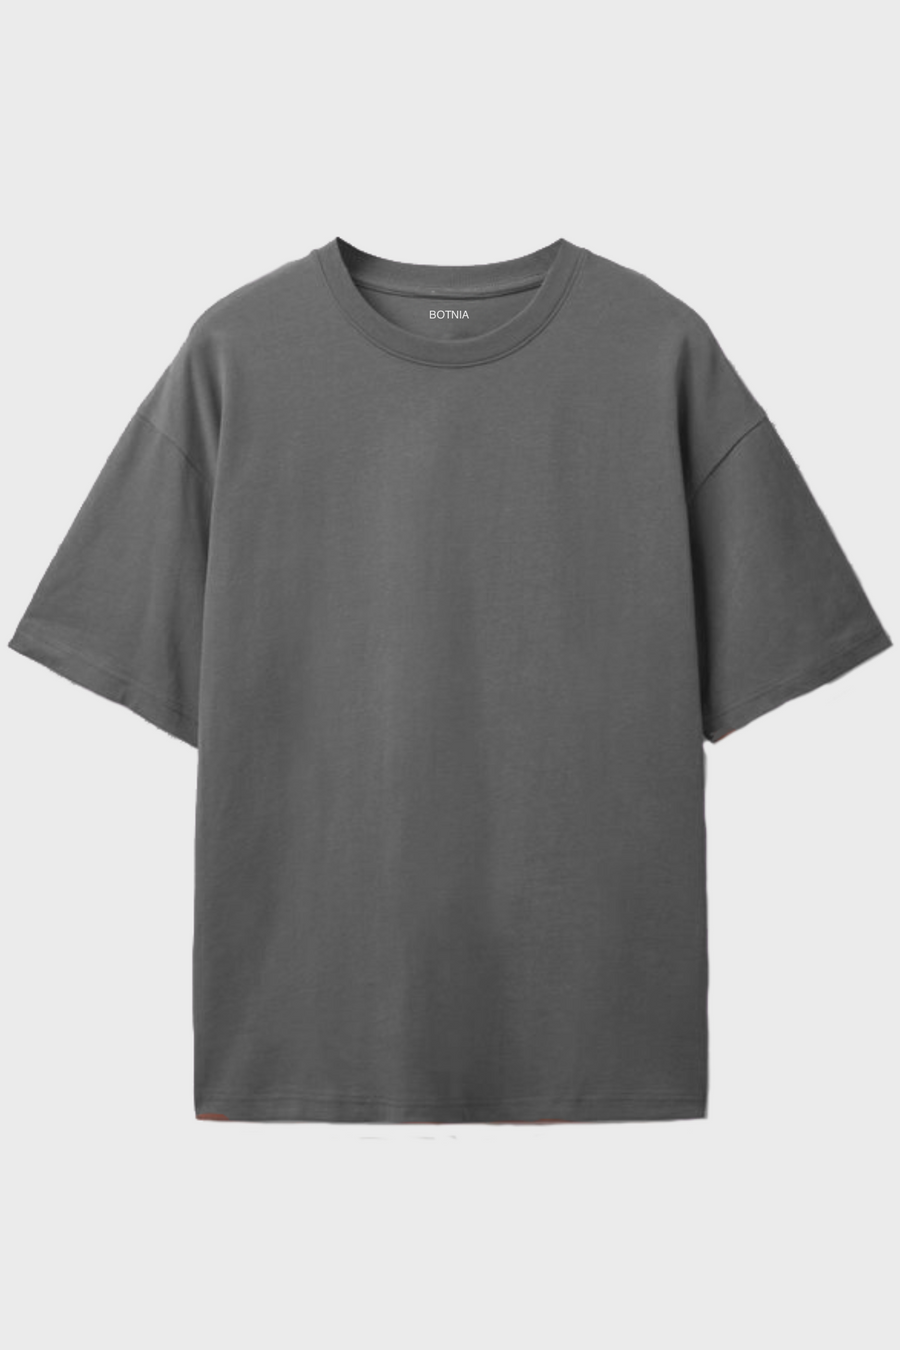 Melange Grey- Oversized t-shirt